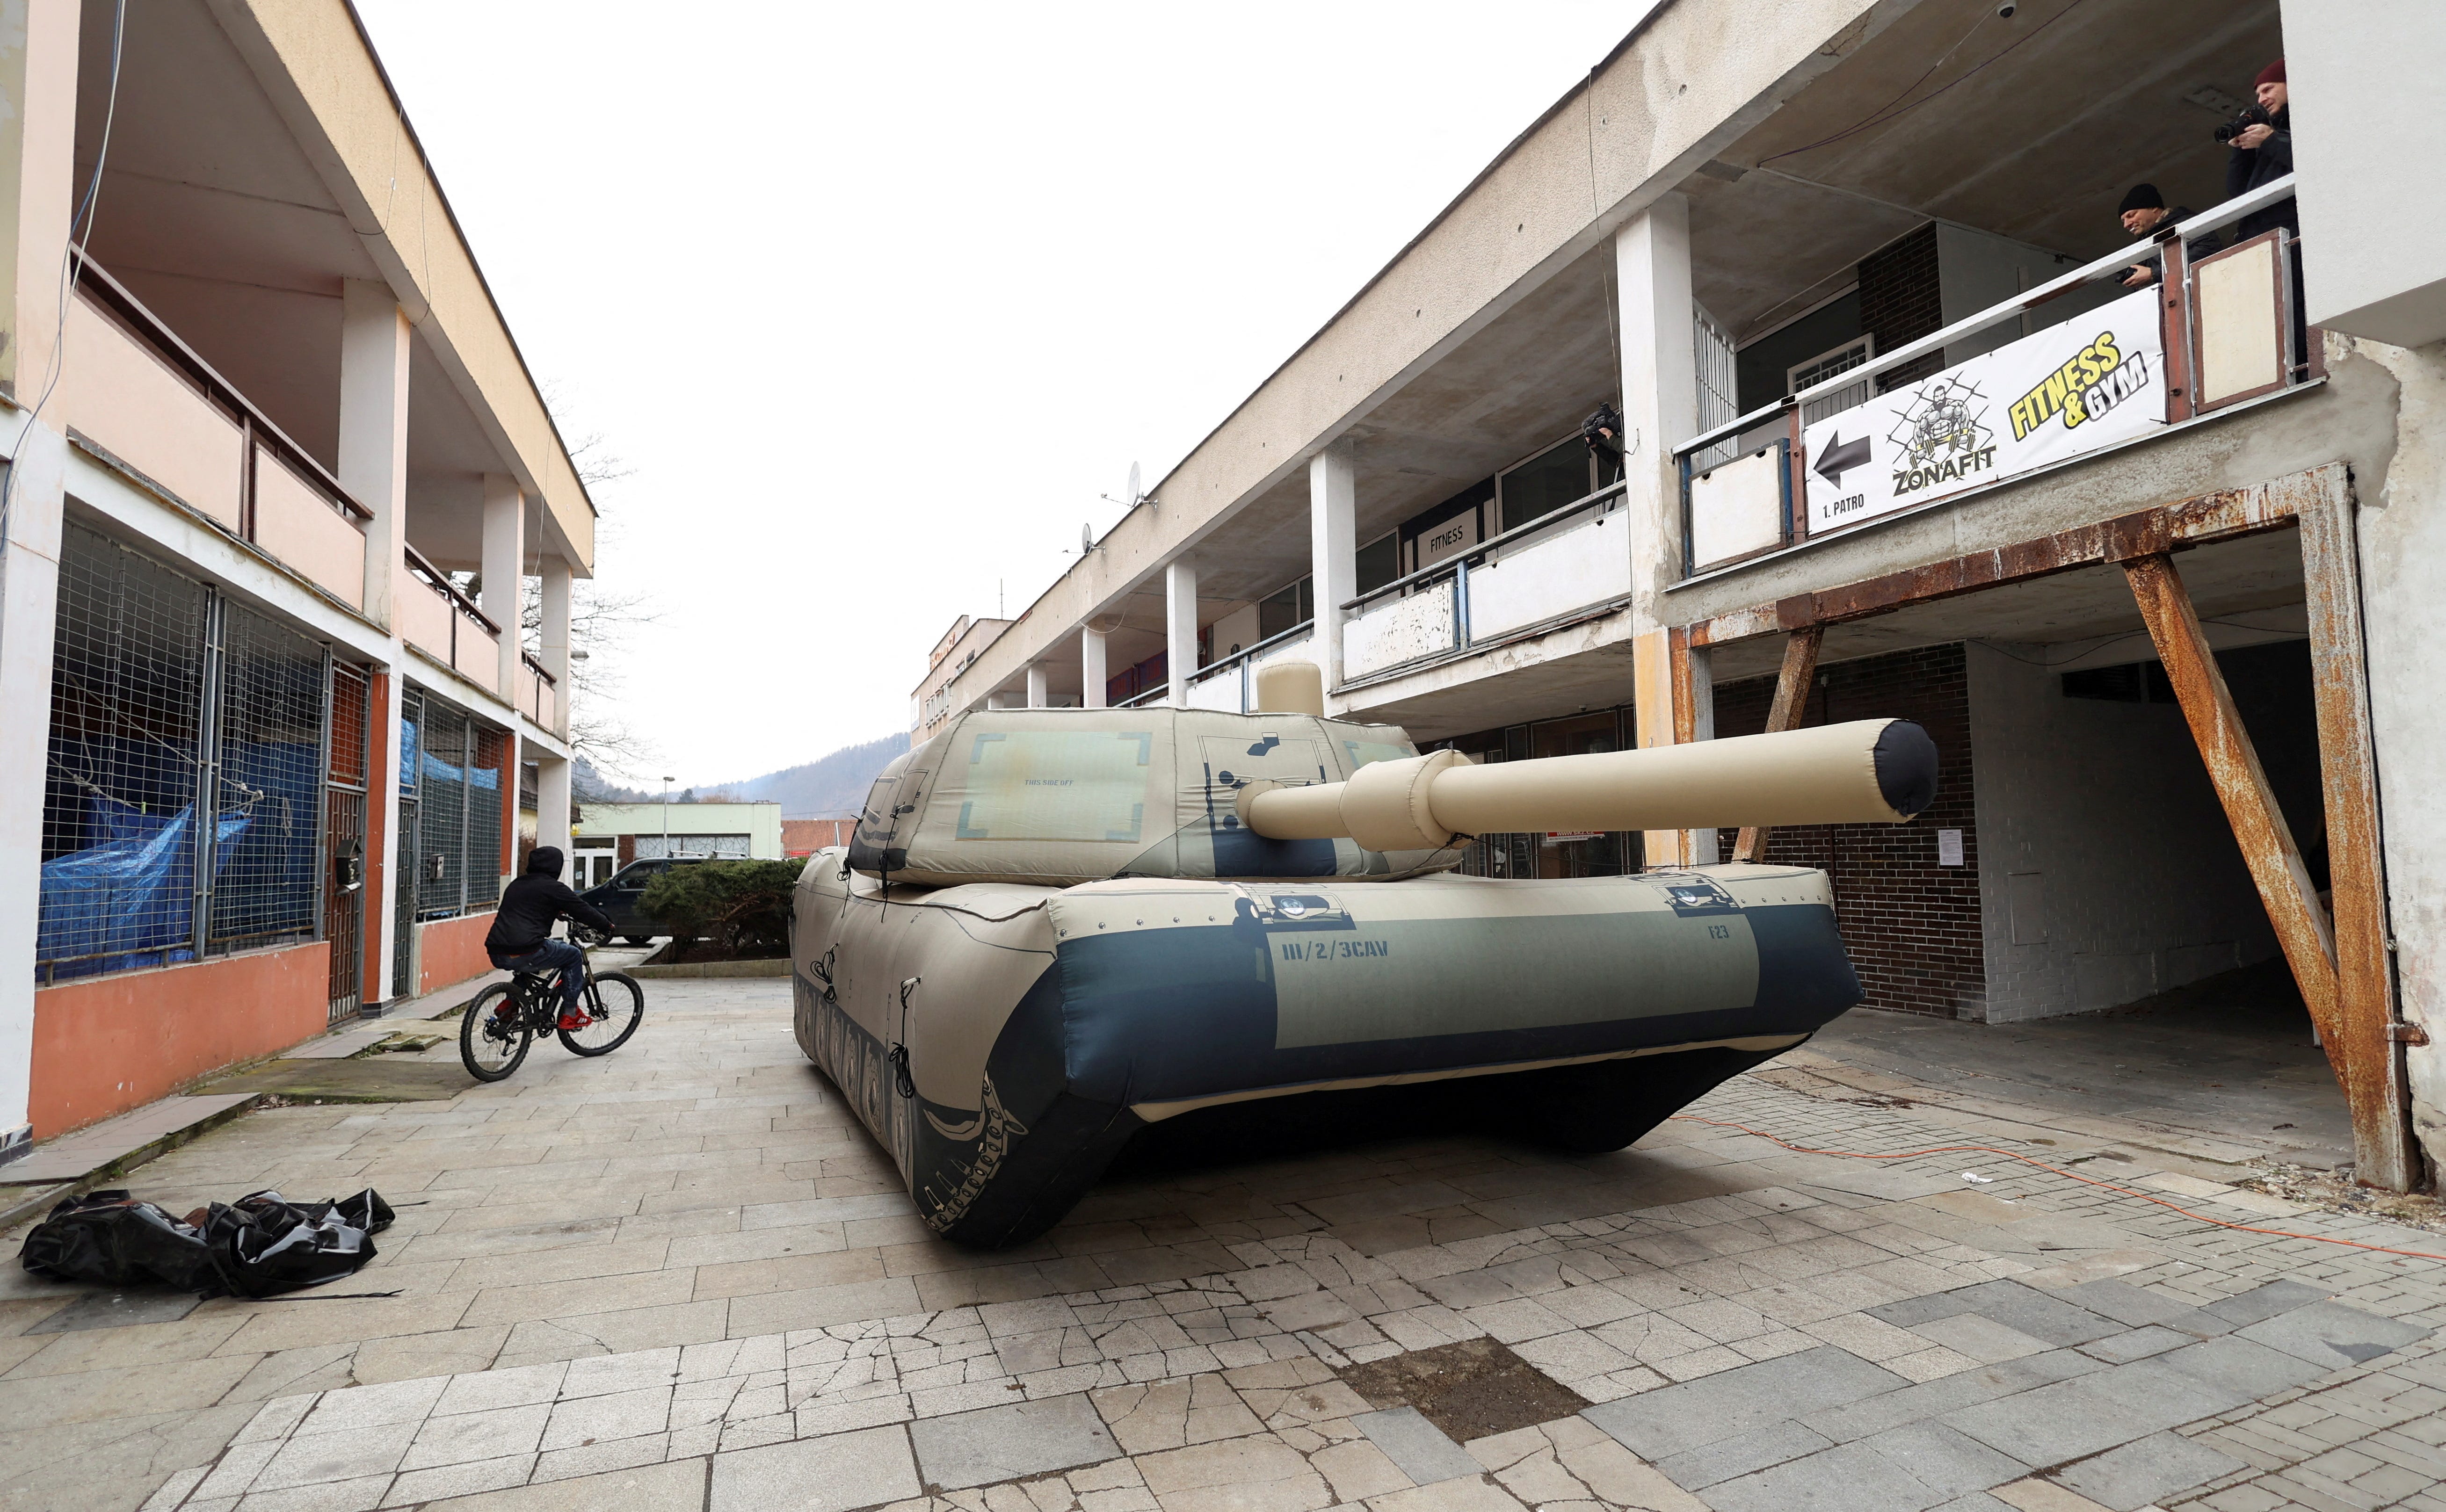 Ein aufblasbarer Täuschkörper eines Militärfahrzeugs, der zur Ablenkung feindlicher Angriffe eingesetzt wird, wird während einer Medienpräsentation am 6. März 2023 in Decin, Tschechische Republik, gezeigt.